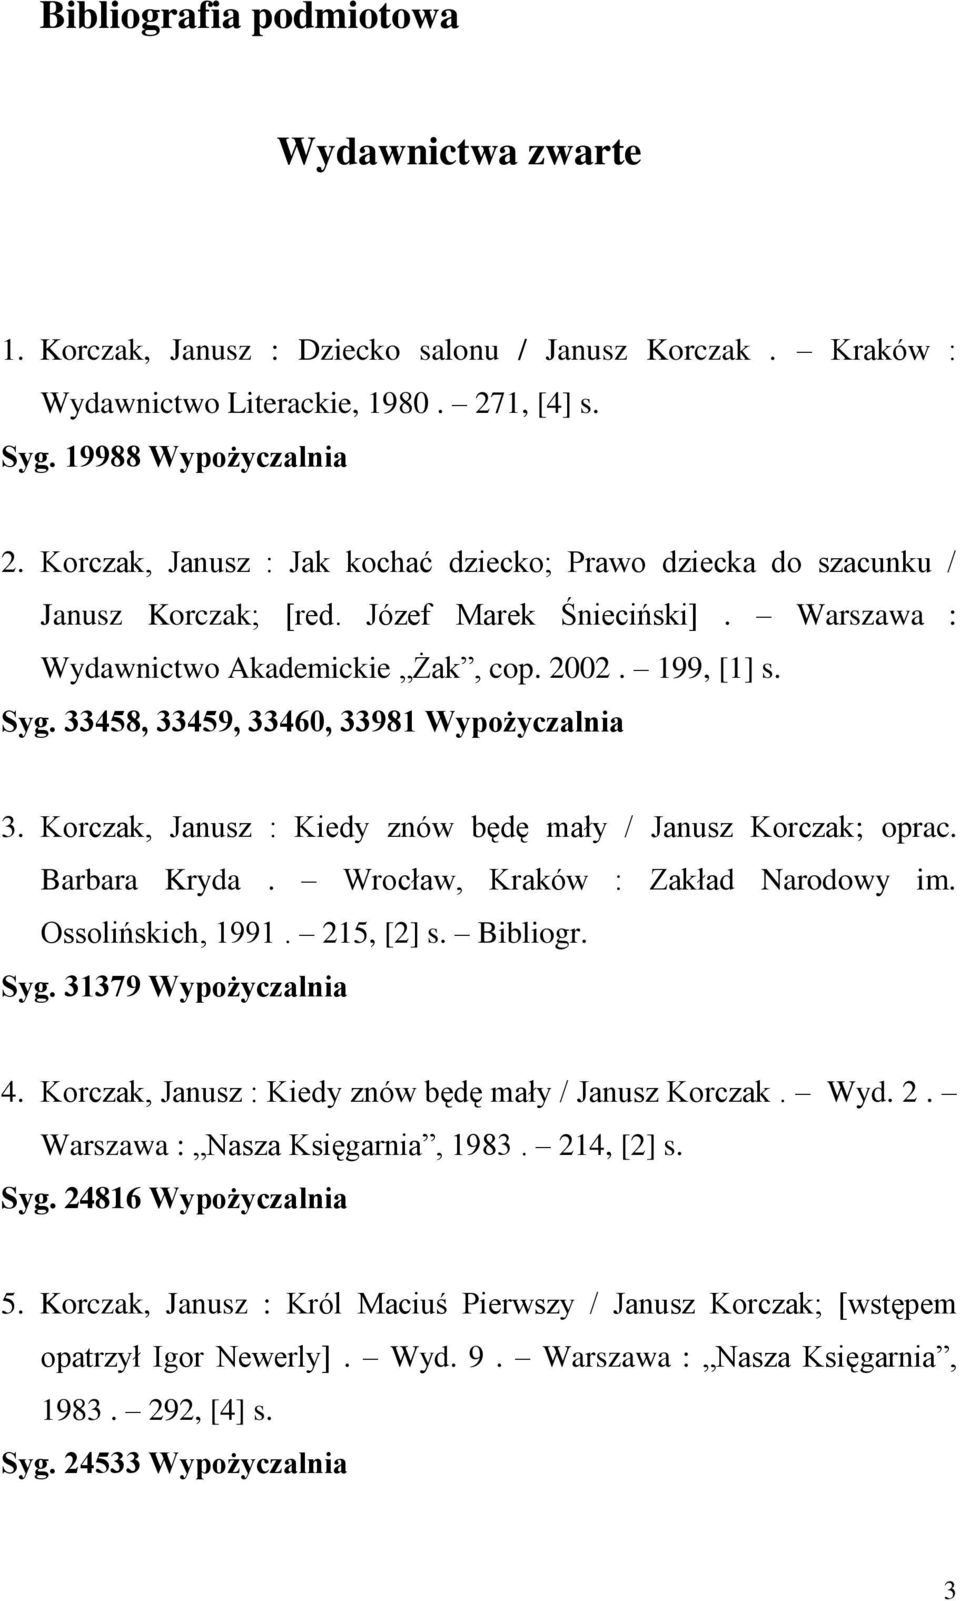 33458, 33459, 33460, 33981 Wypożyczalnia 3. Korczak, Janusz : Kiedy znów będę mały / Janusz Korczak; oprac. Barbara Kryda. Wrocław, Kraków : Zakład Narodowy im. Ossolińskich, 1991. 215, [2] s.